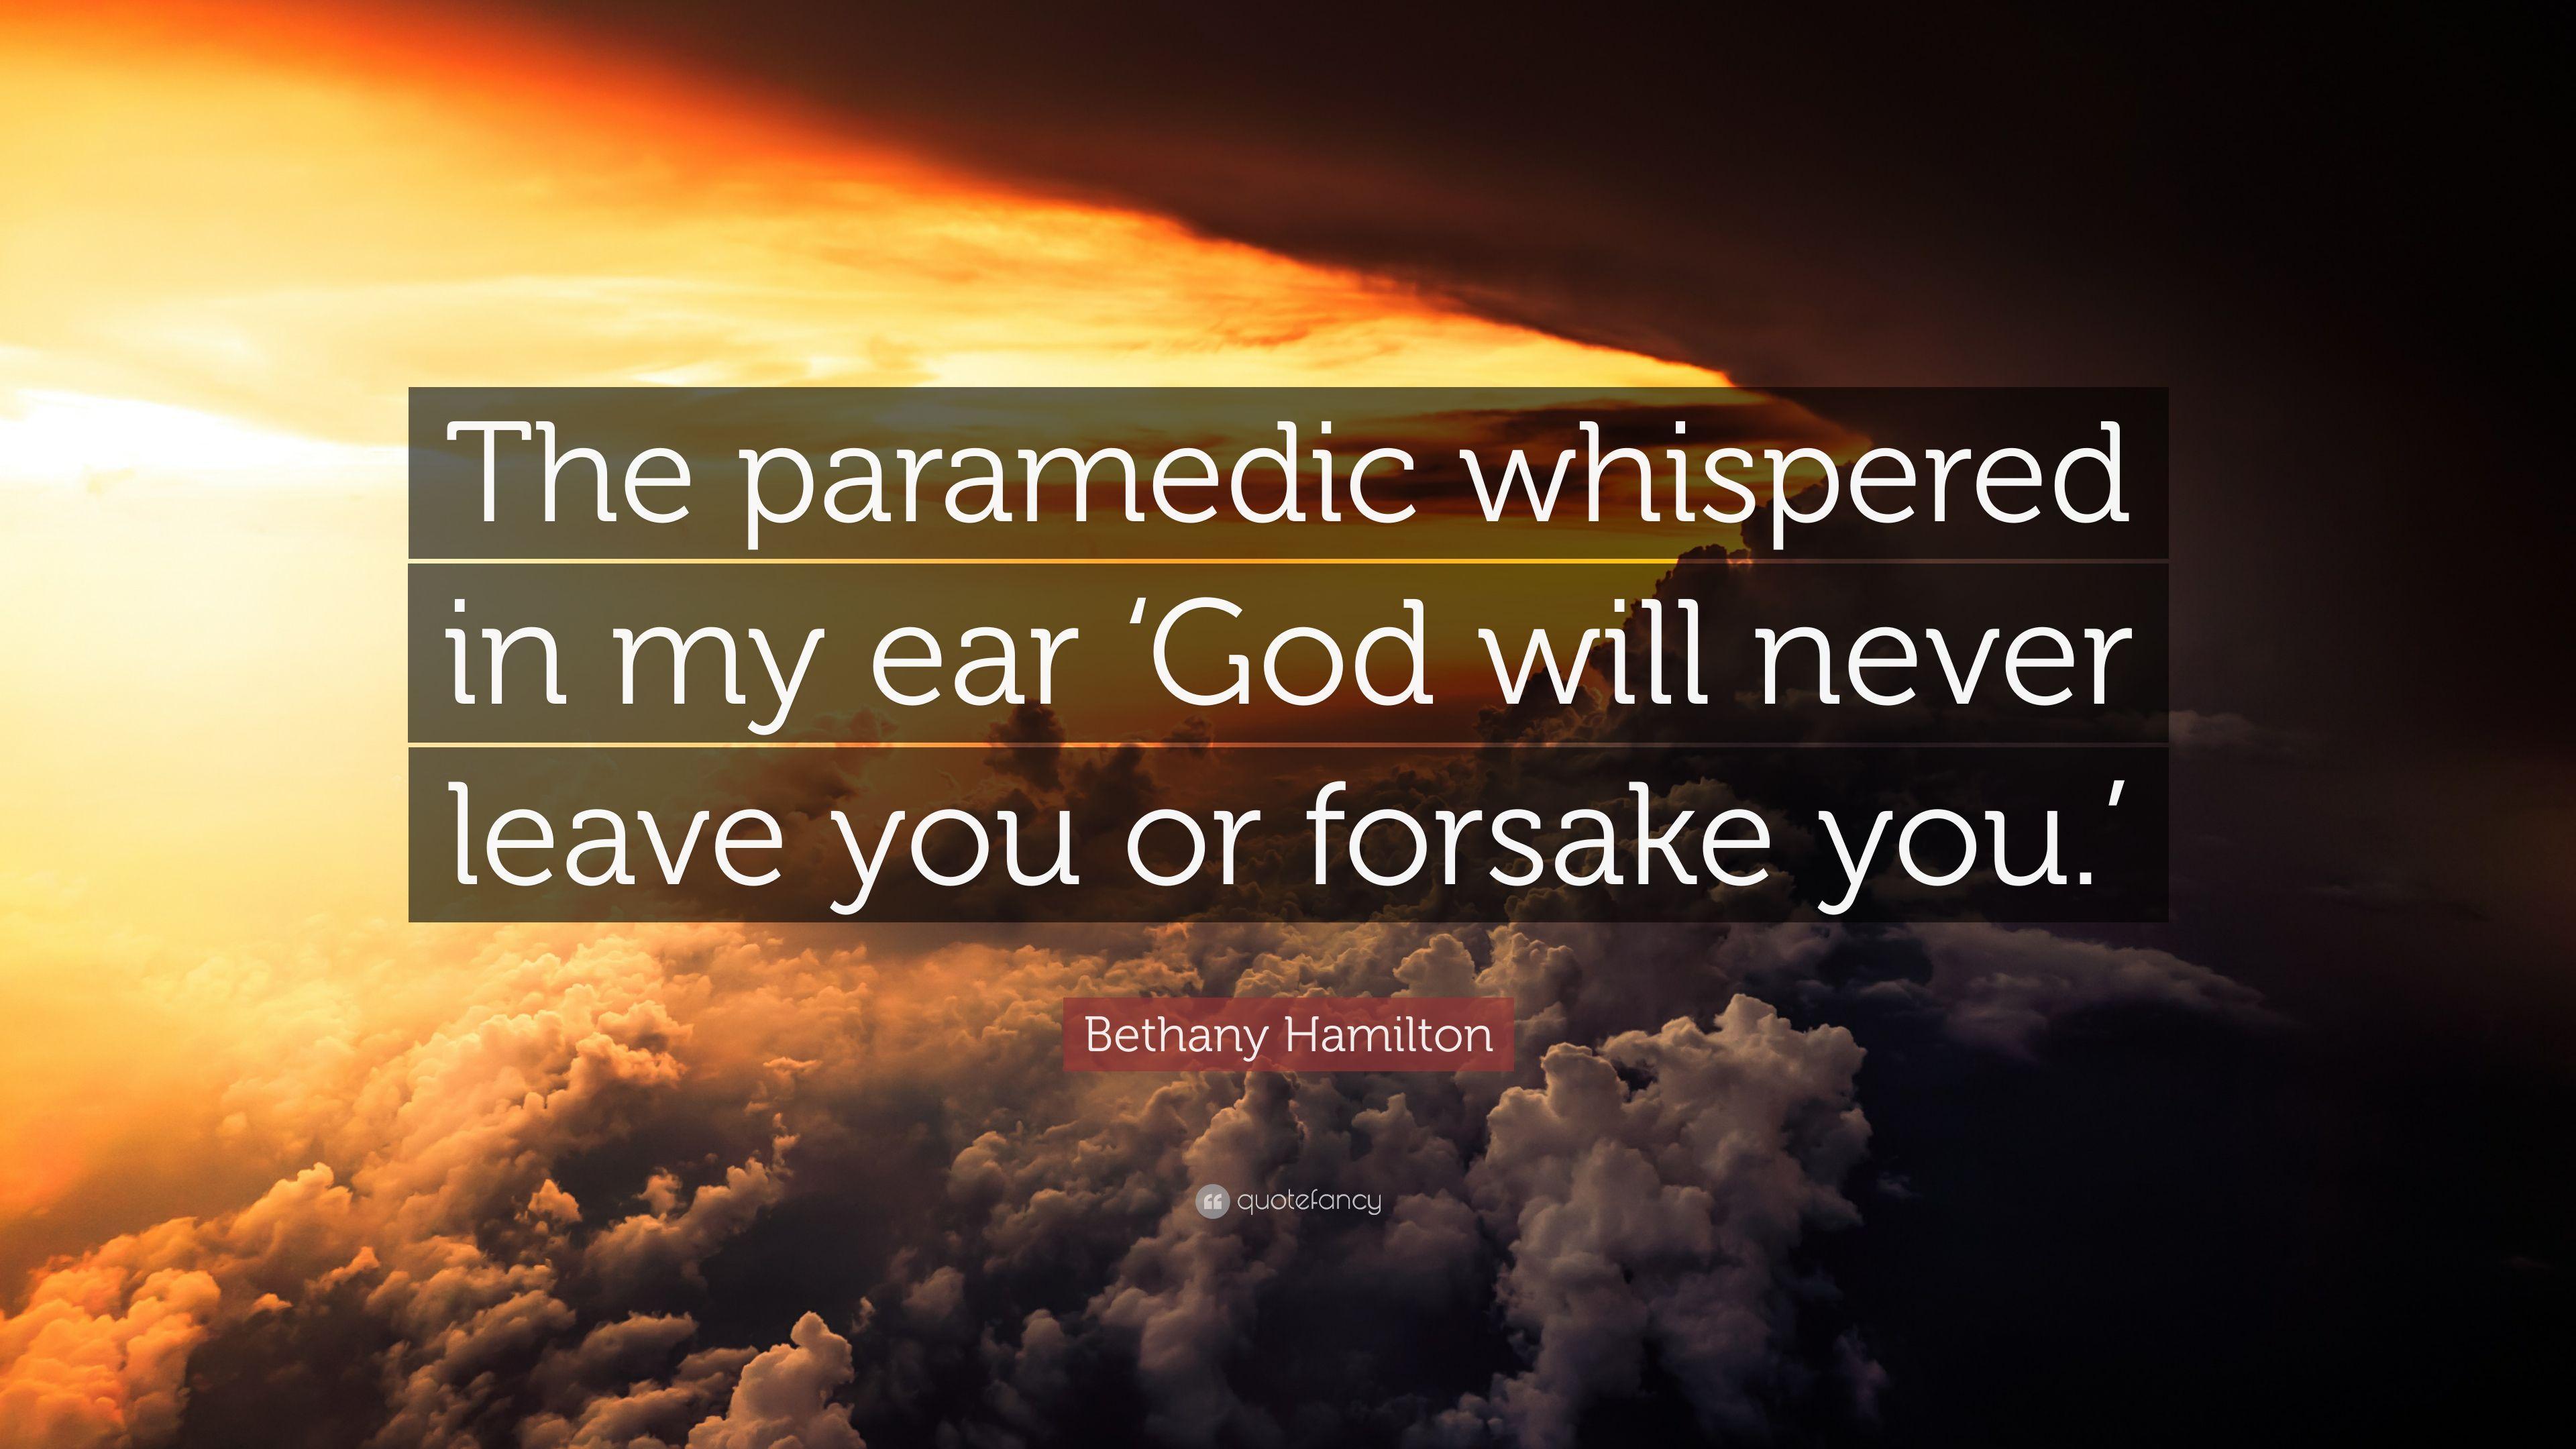 Bethany Hamilton Quote: “The paramedic whispered in my ear 'God will